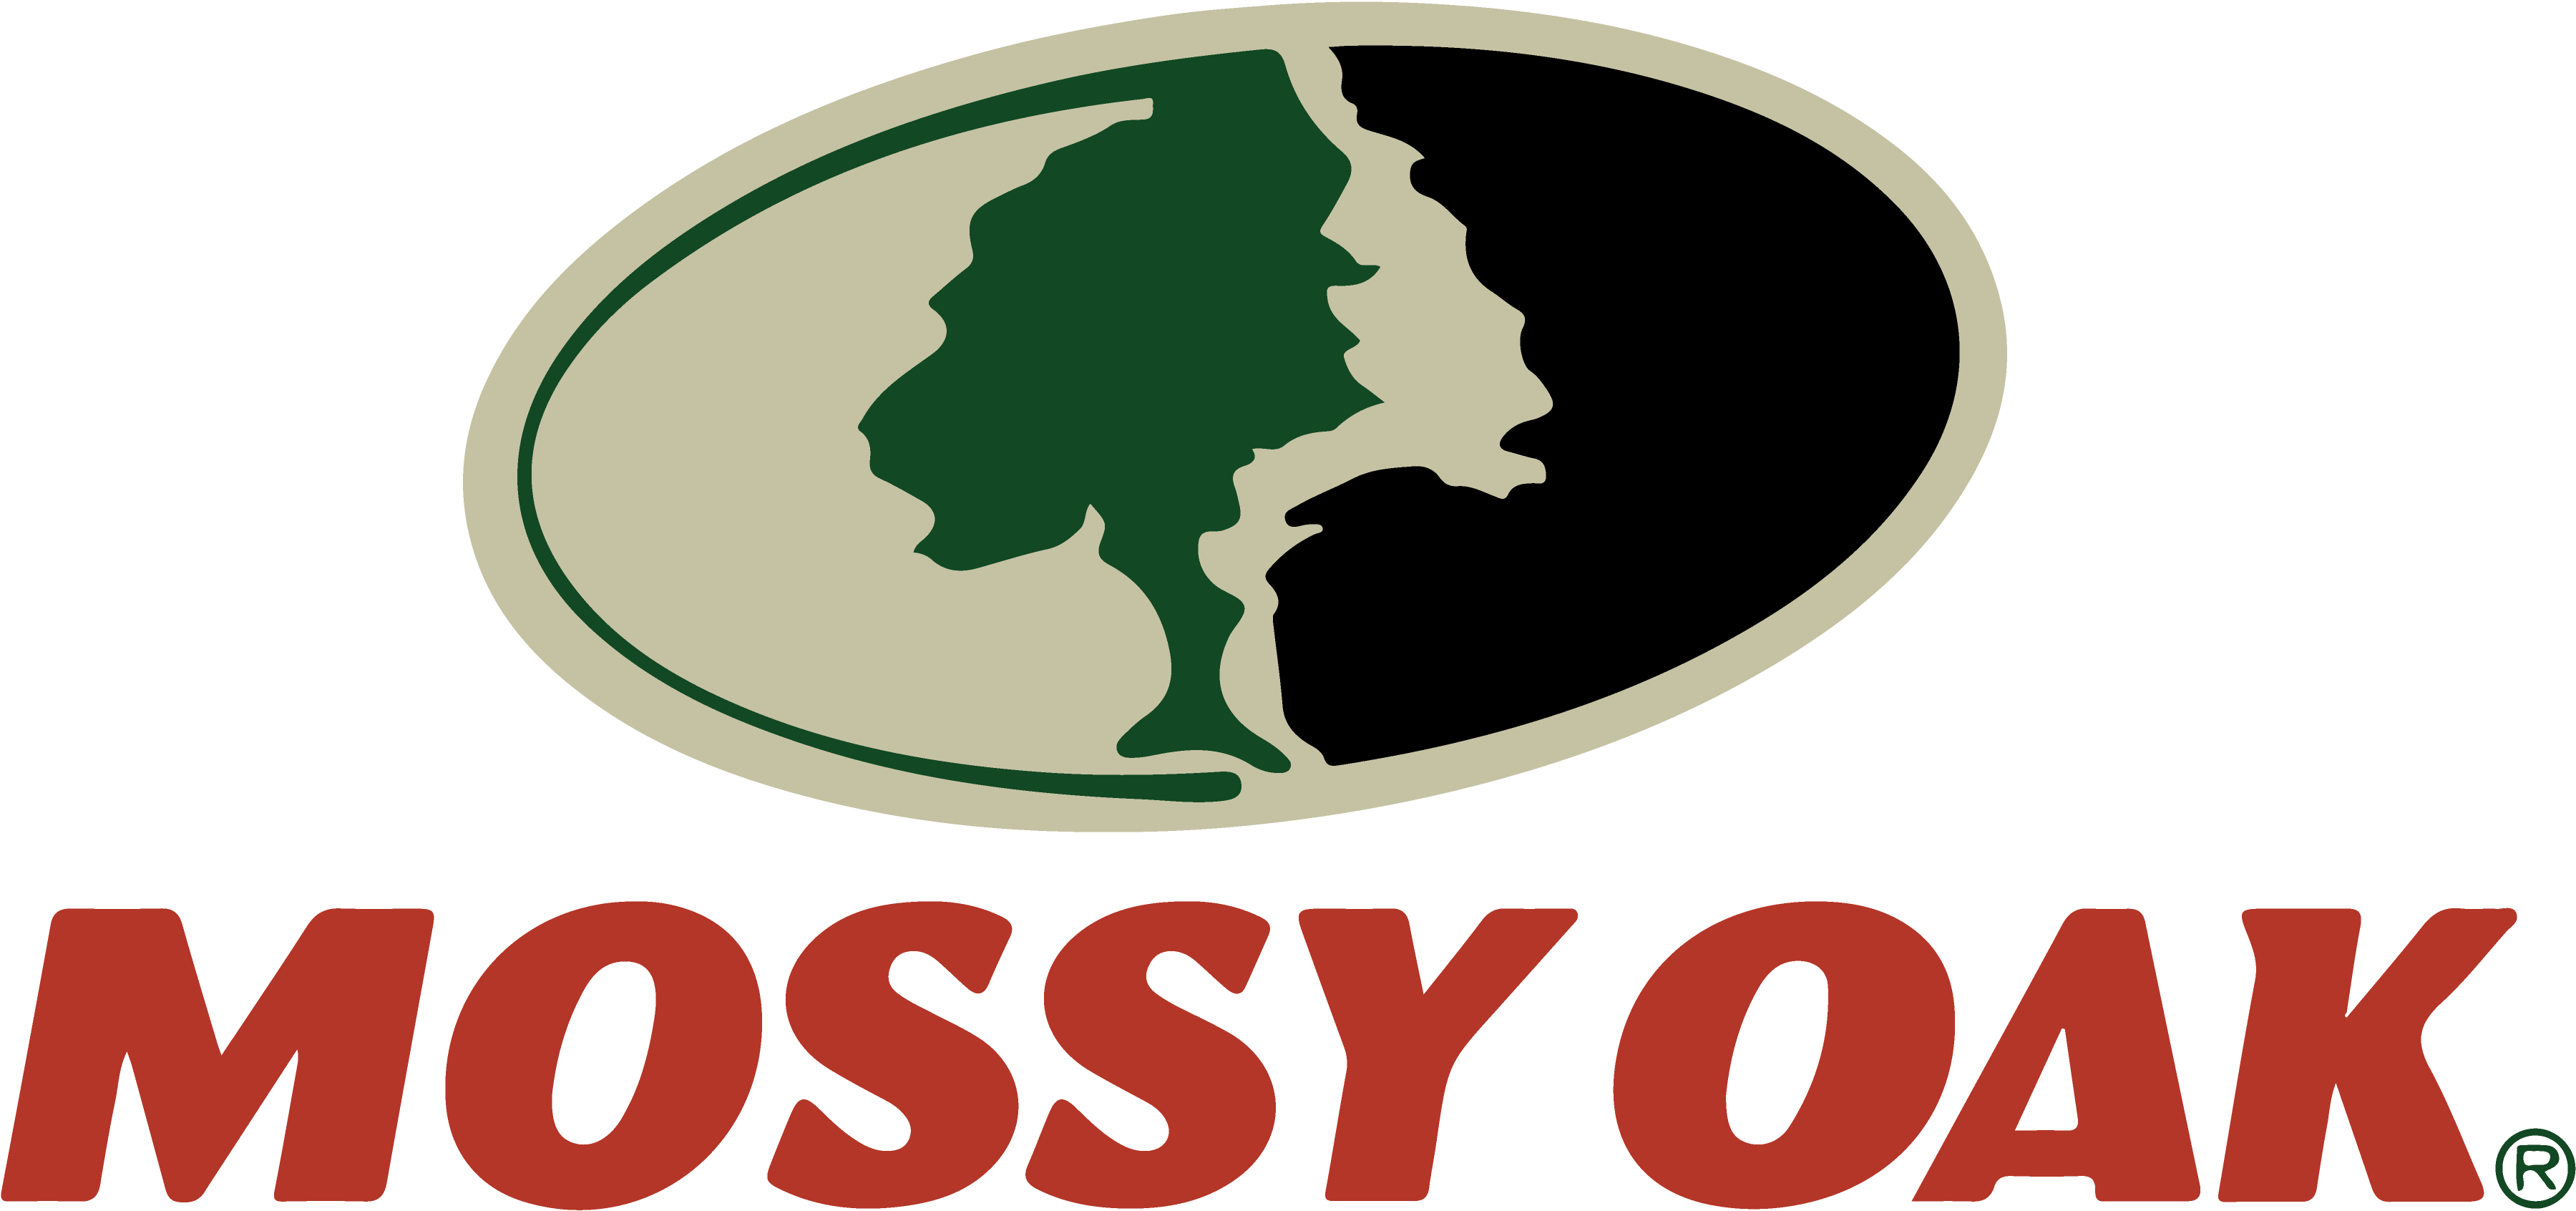 mossy-oak